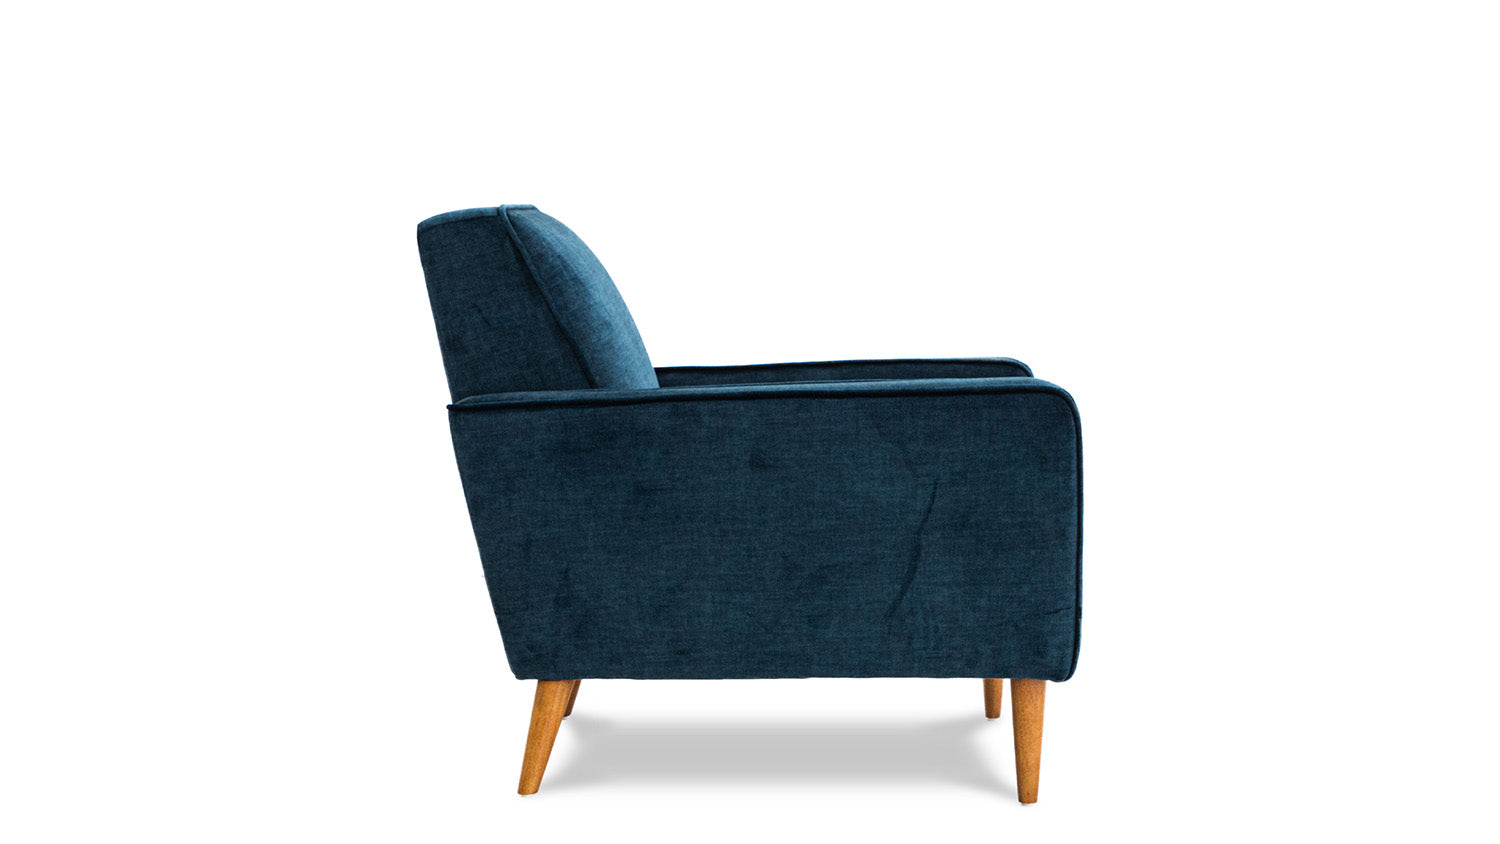 London Vogue Velvet Chair - Chair from Secret Sofa - Just $899.00! Shop now at Secret Sofa